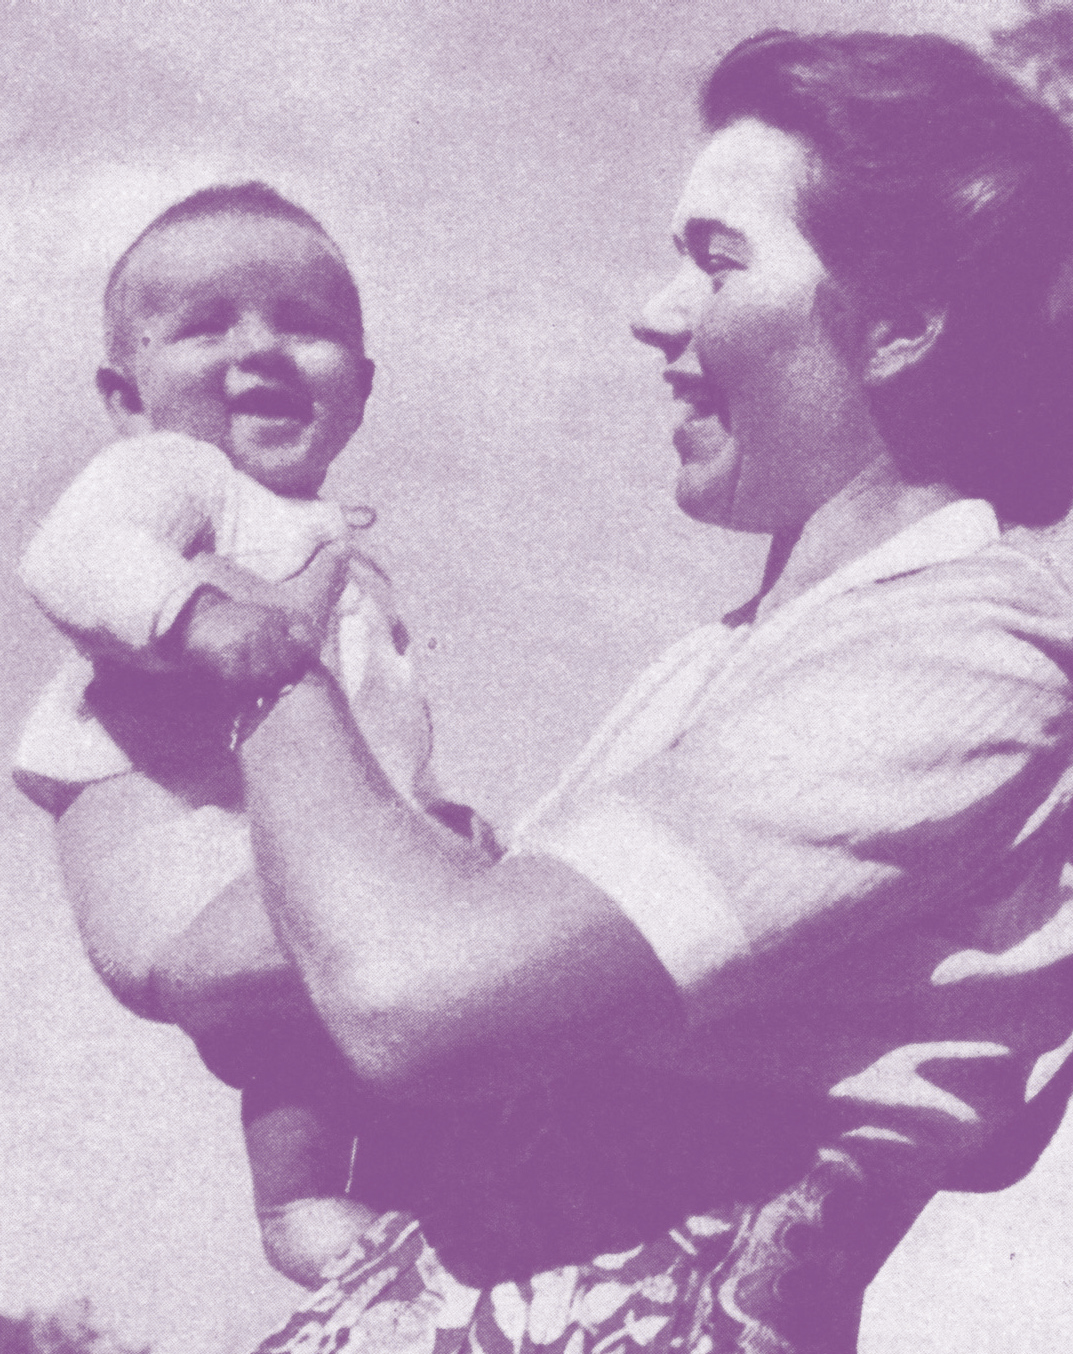 Aus den 1940er-Jahren: Eine Mutter hält ihr Kind vor sich